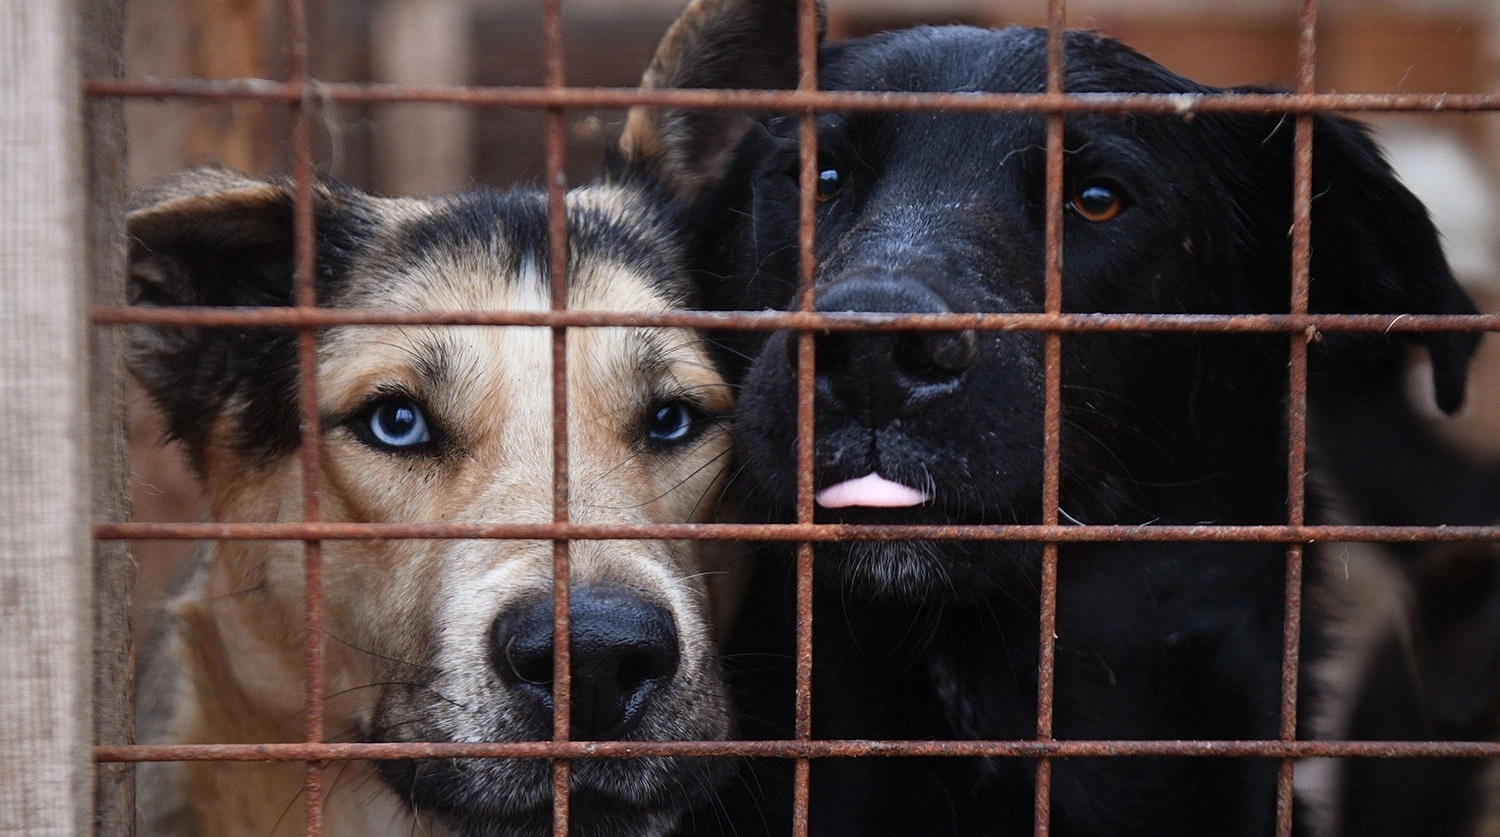 В Госдуме предложили запретить самовыгул домашних животных и ввести штрафы до ₽30 тыс. за выброшенных питомцев. 1